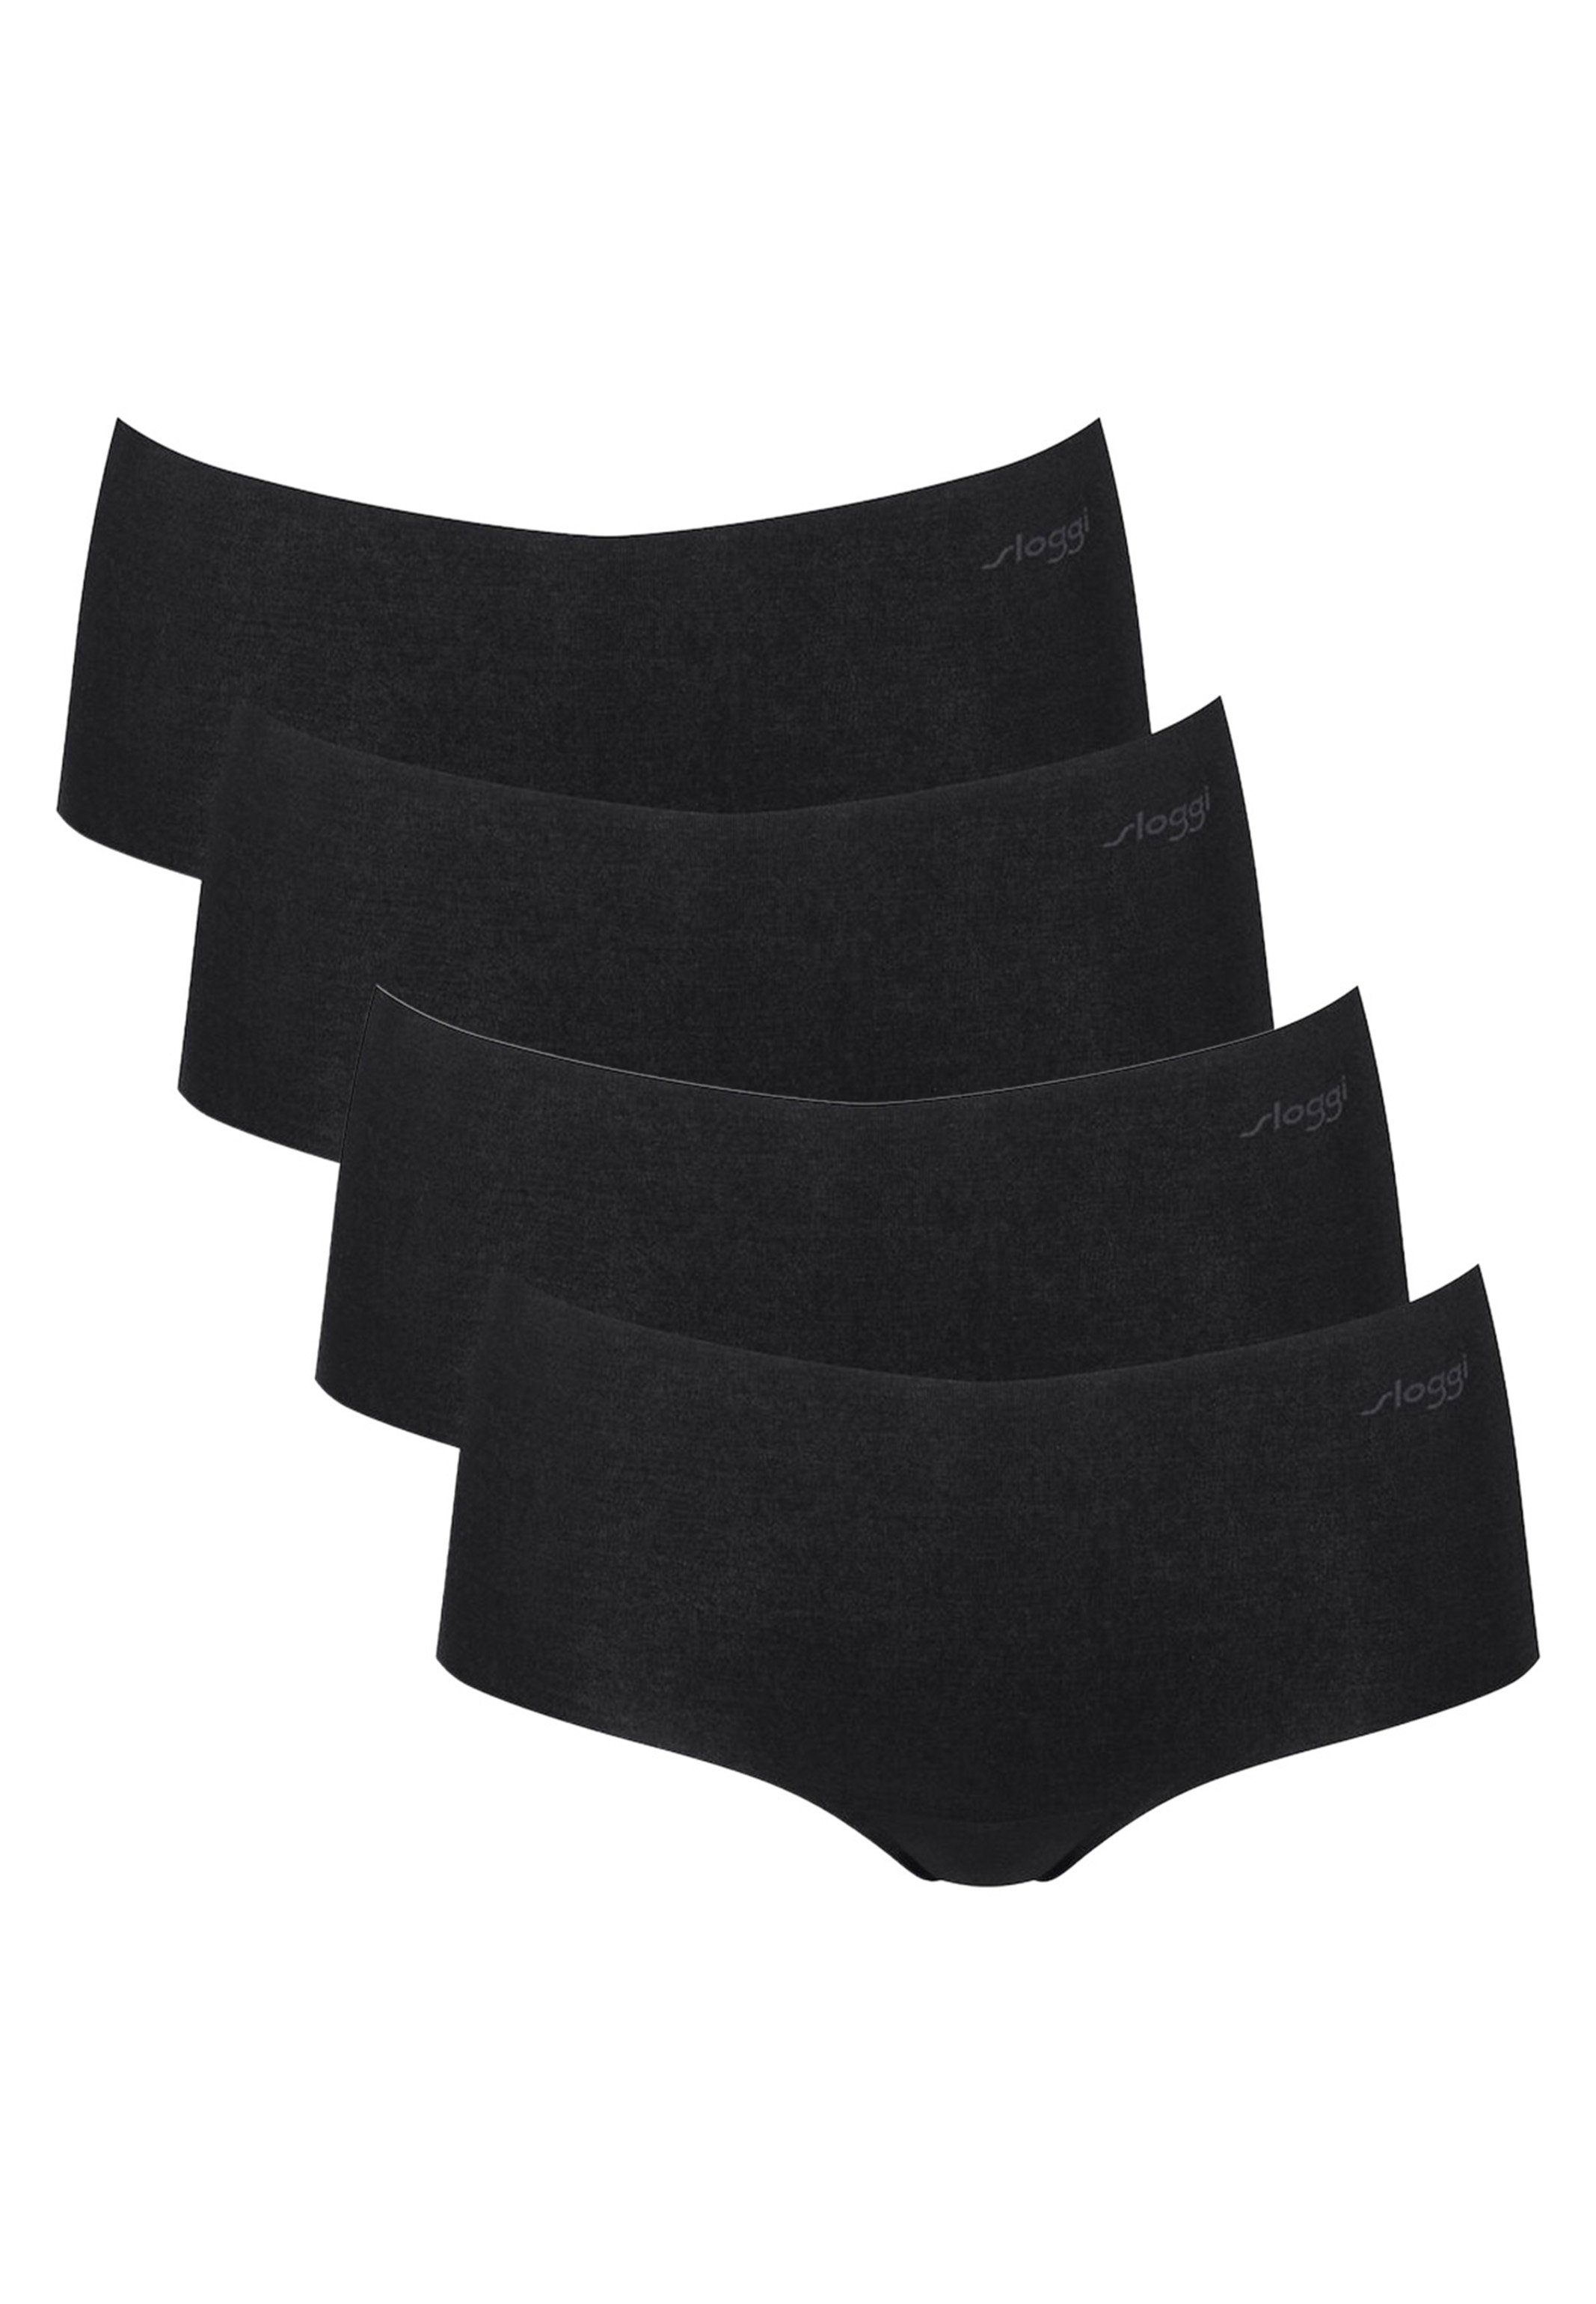 (Spar-Set, - Kleidung Nahtlos - Slip Short 4-St) Pack unter Abzeichnen 2.0 Panty Schwarz Sloggi Kein Modal ZERO 4er